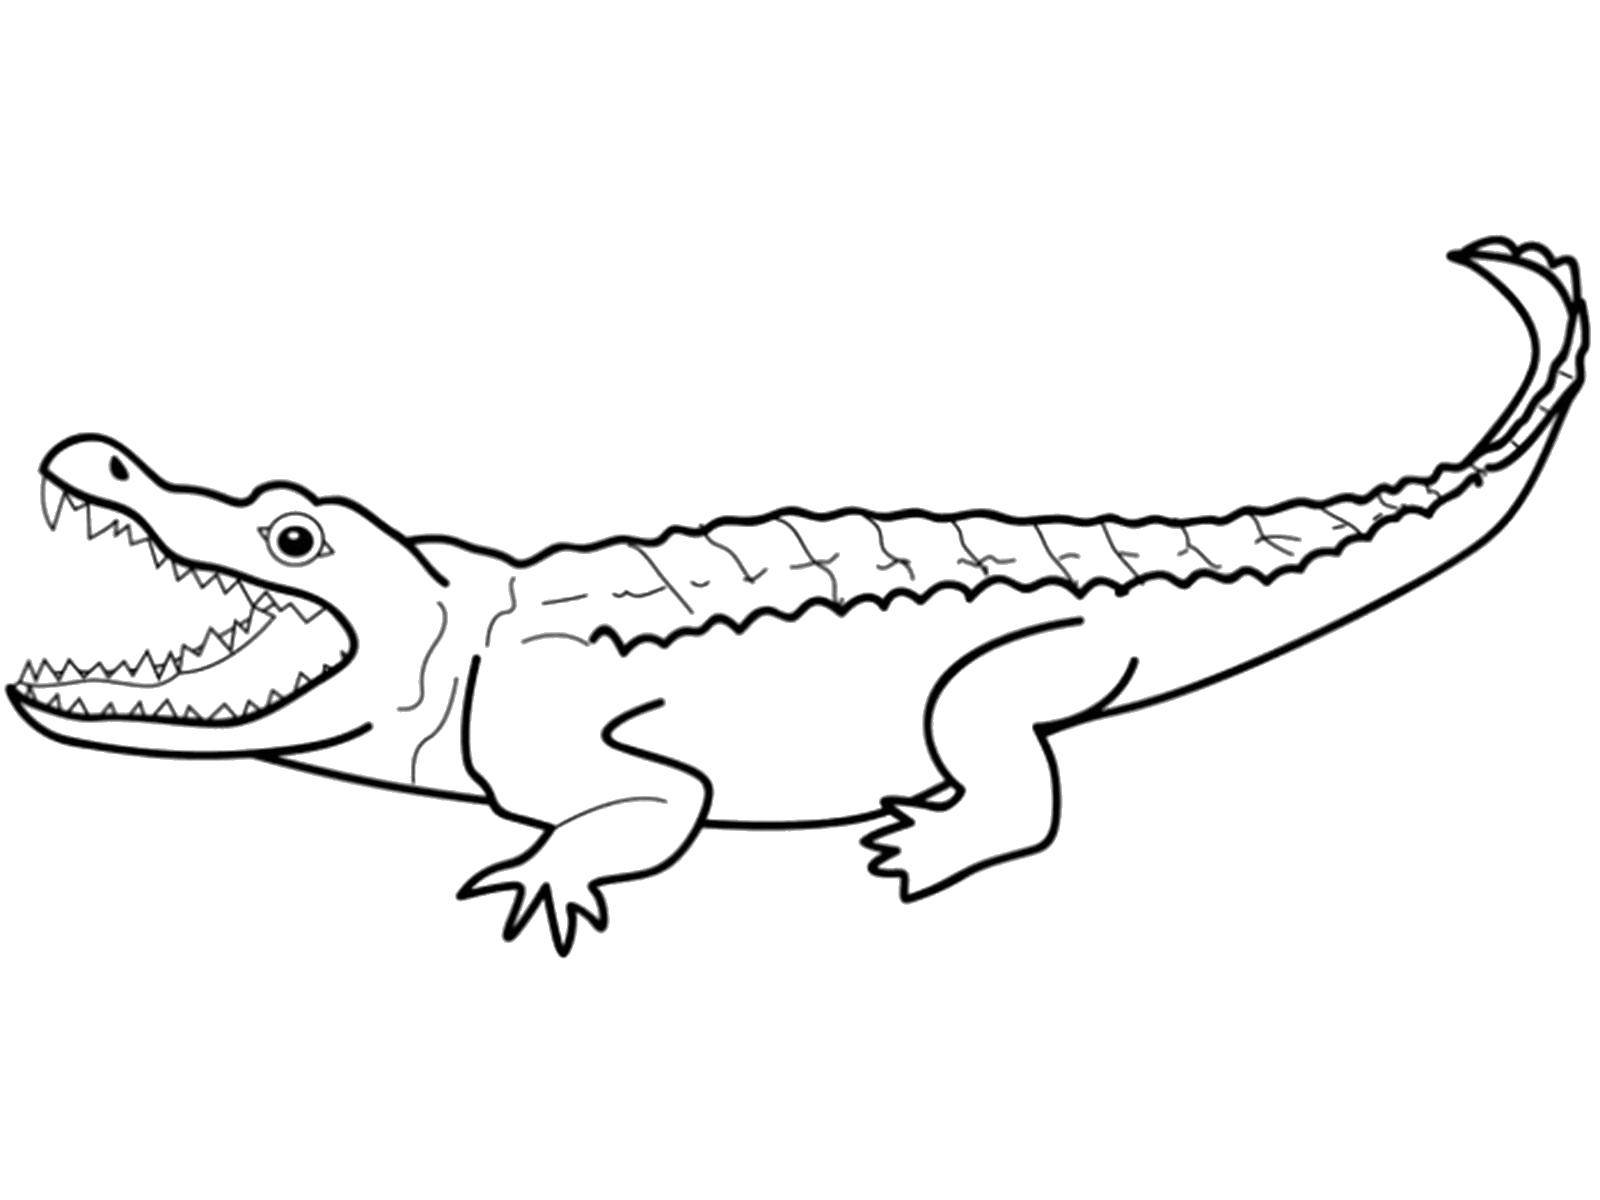 Крокодил раскраска для детей распечатать бесплатно | Раскраски, Рисунки, Раскраска для детей